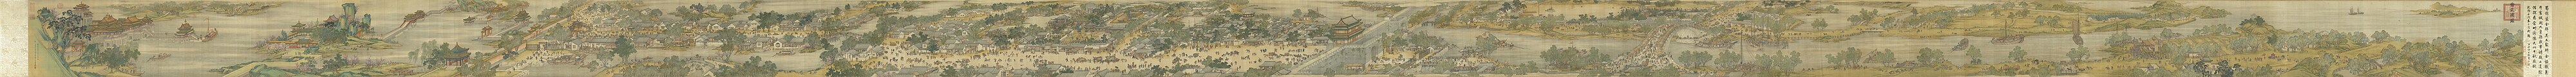 Oude handrol: Langs de rivier tijdens het Qingmingfestival, een remake uit de 18e eeuw van het origineel uit de 12e eeuw door de Chinese artiest Zhang Zeduan.